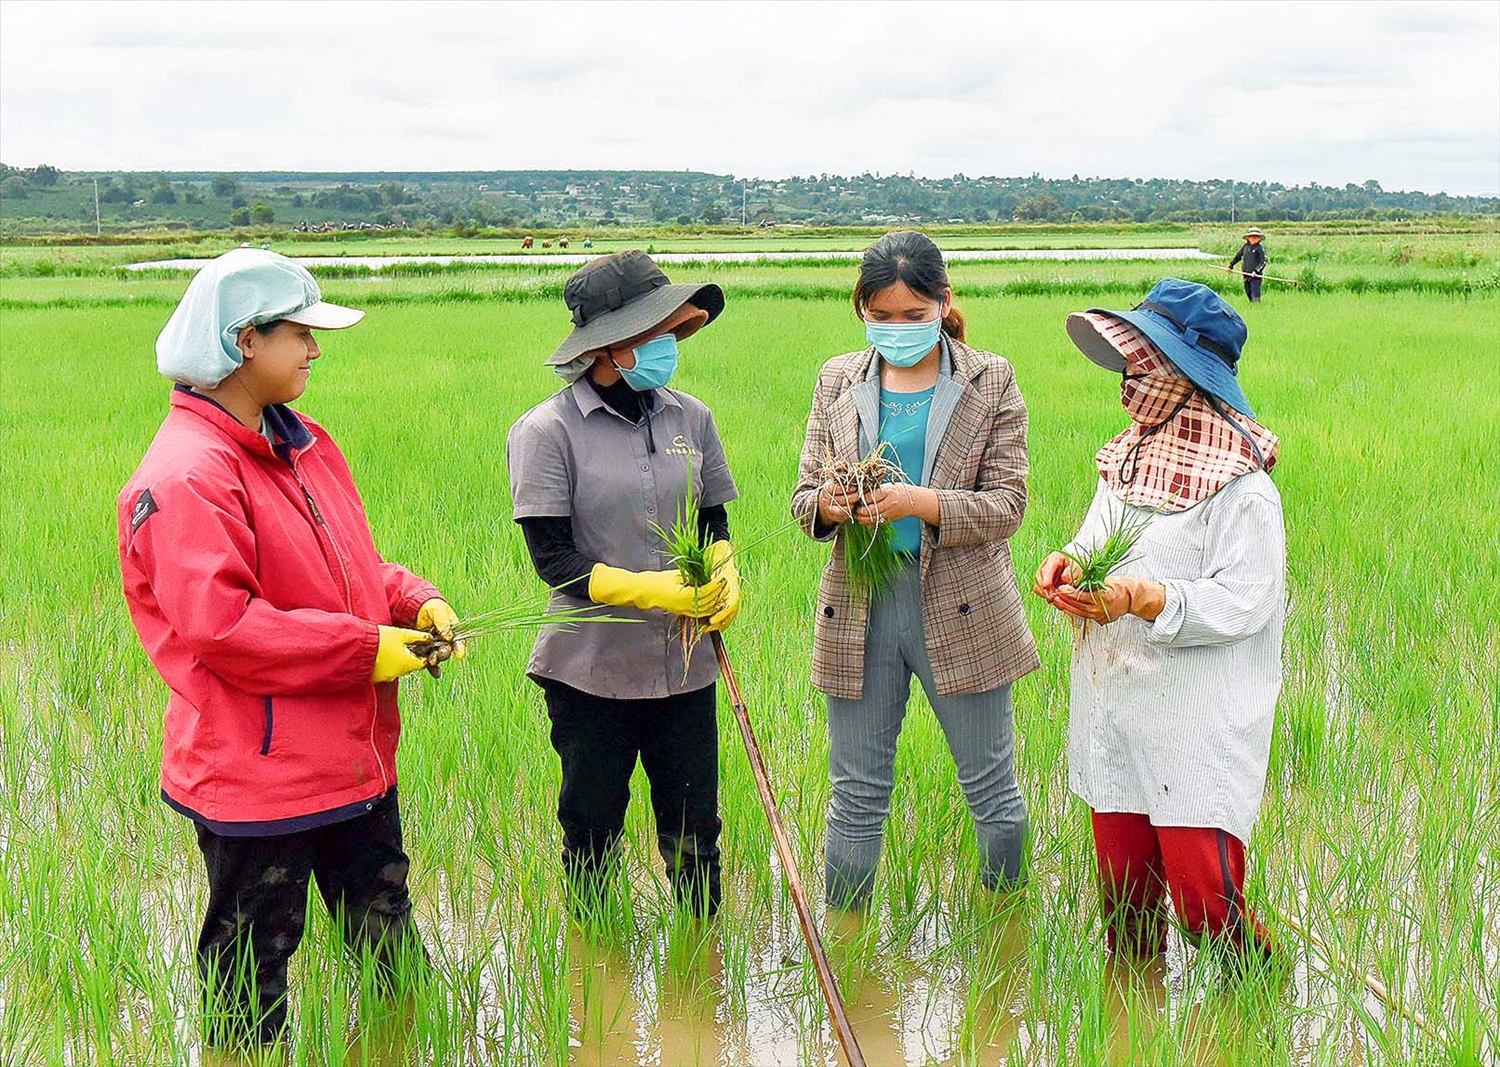 Cán bộ nông nghiệp trao đổi với người dân về kinh nghiệm trồng giống lúa mới tại xã Hà Bầu